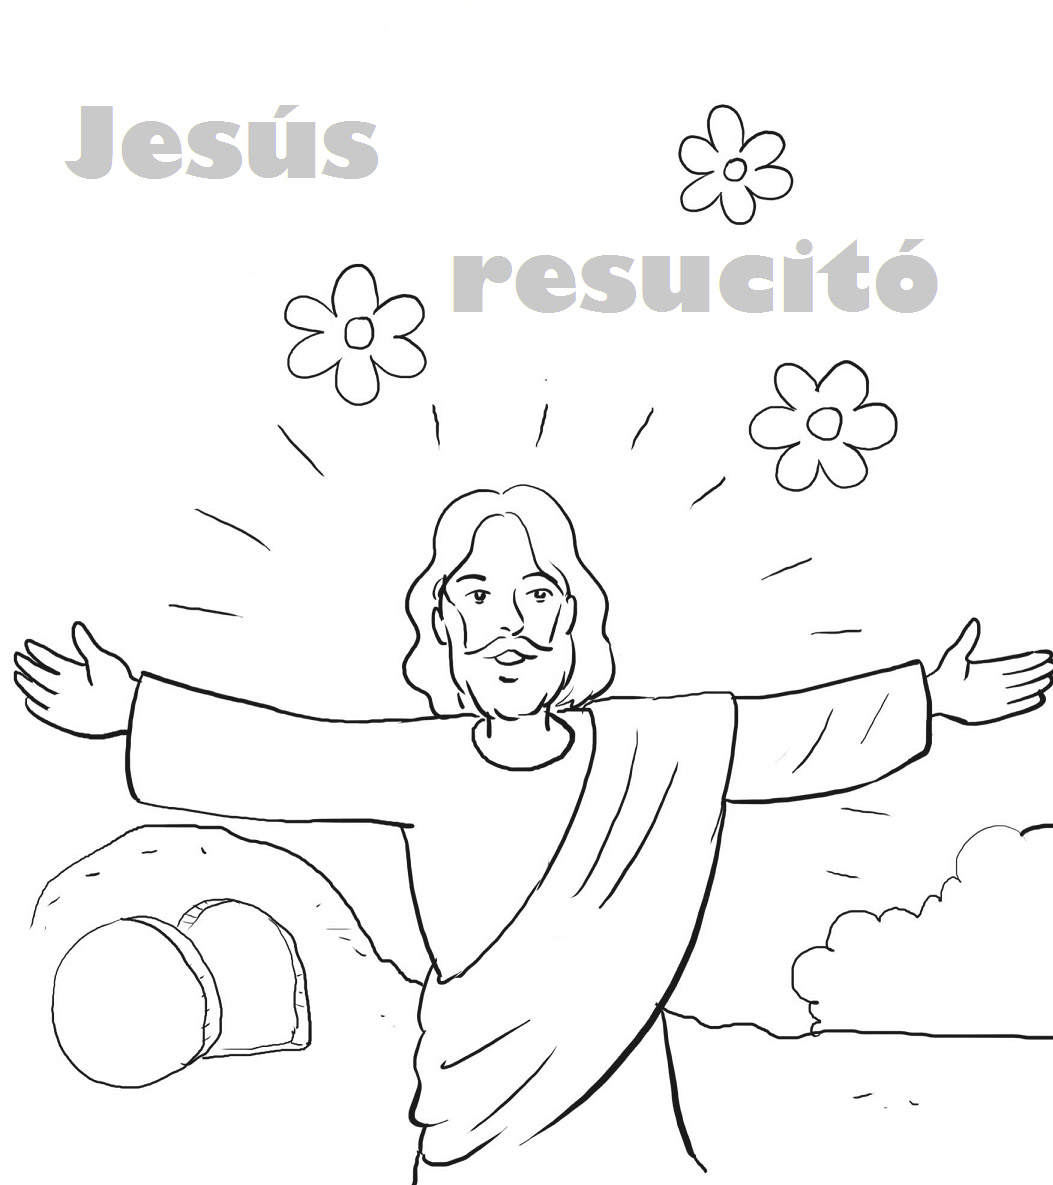 Imagenes de jesus resucitado para colorear